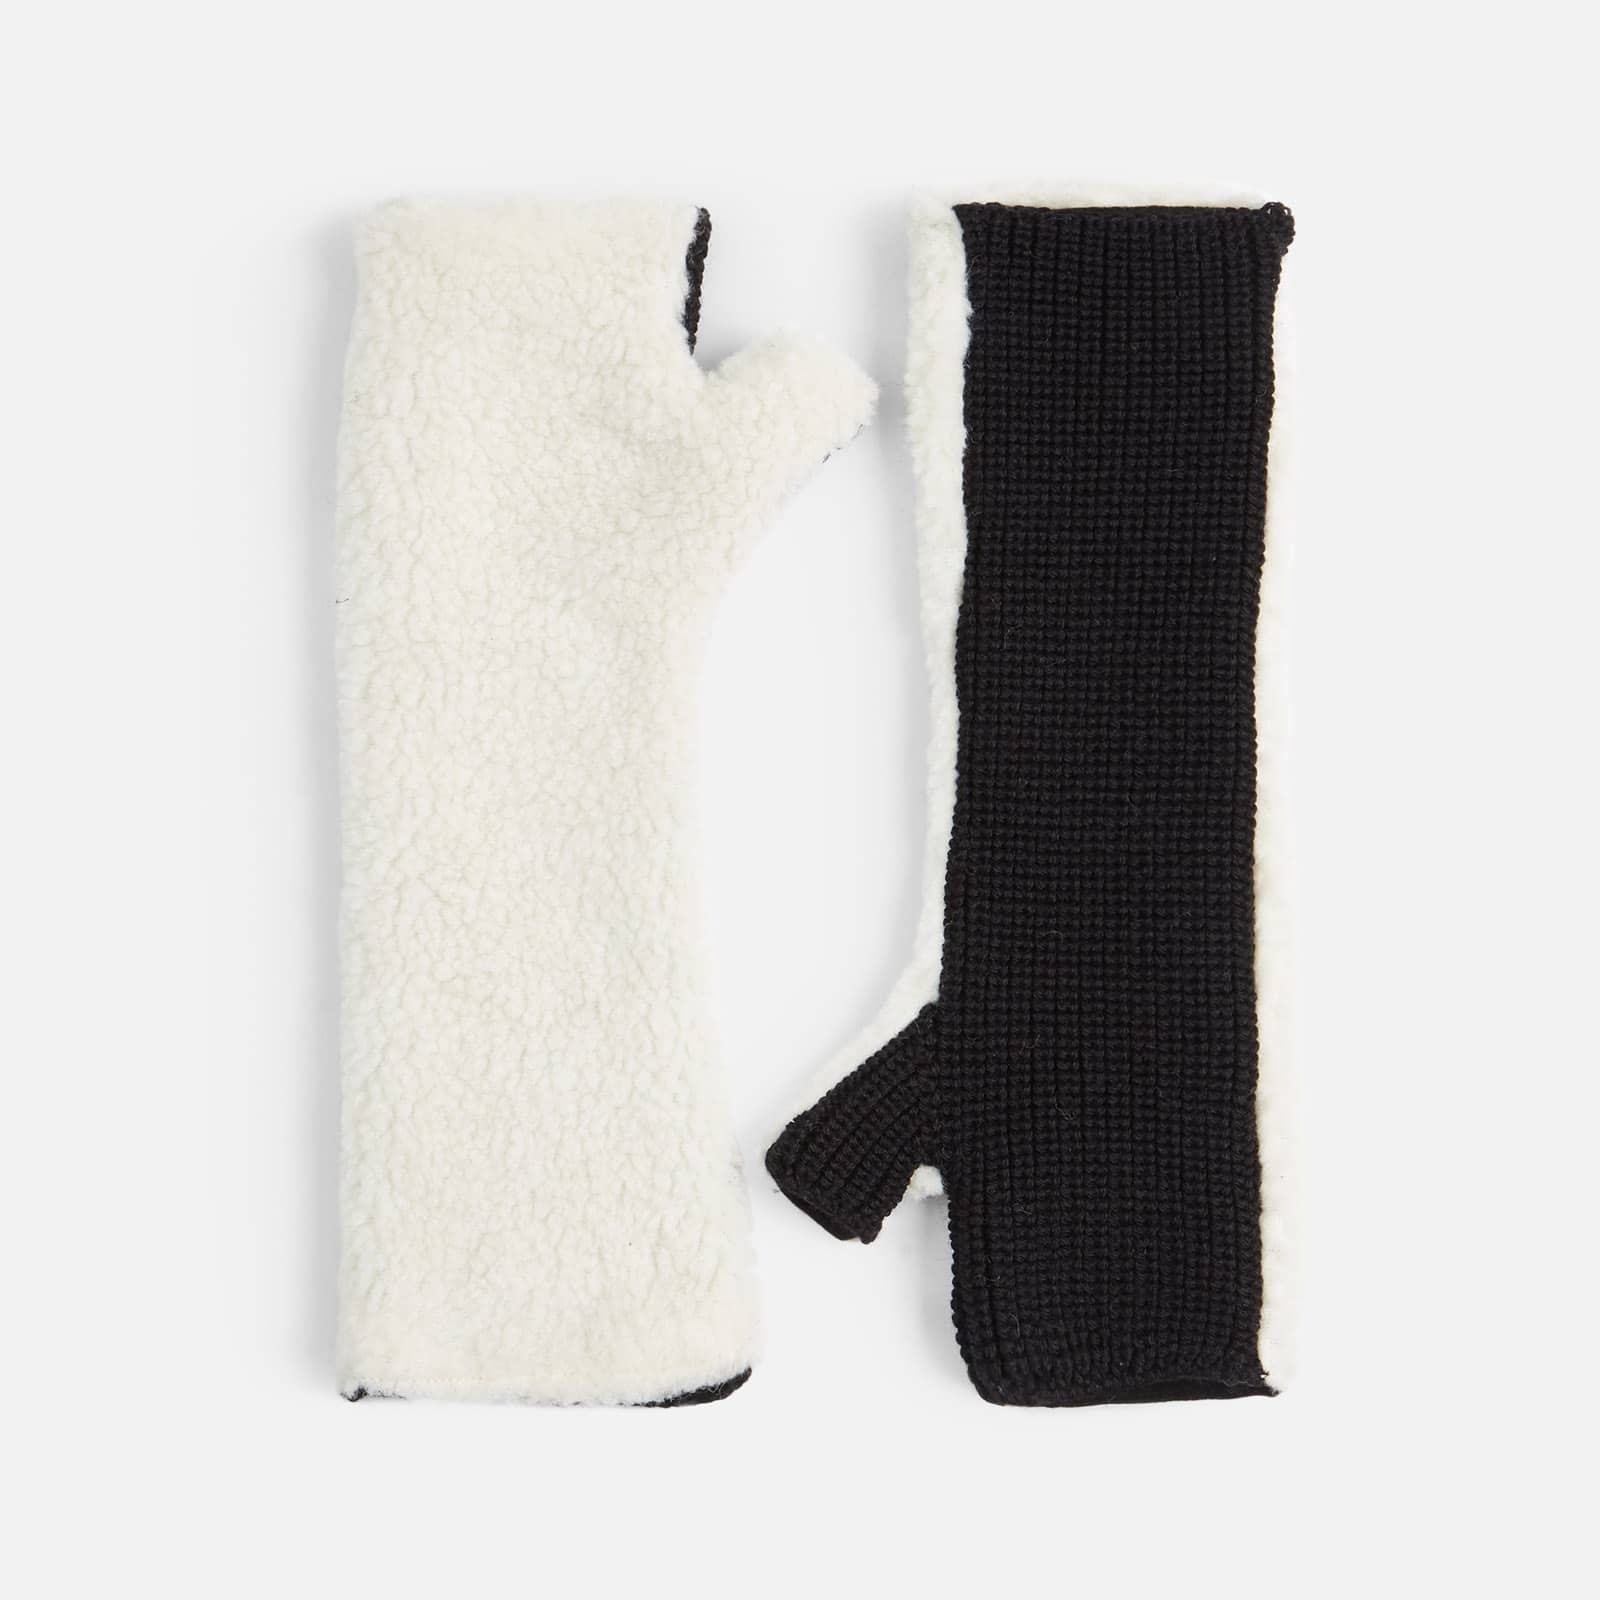 Long Gloves Black White - 3